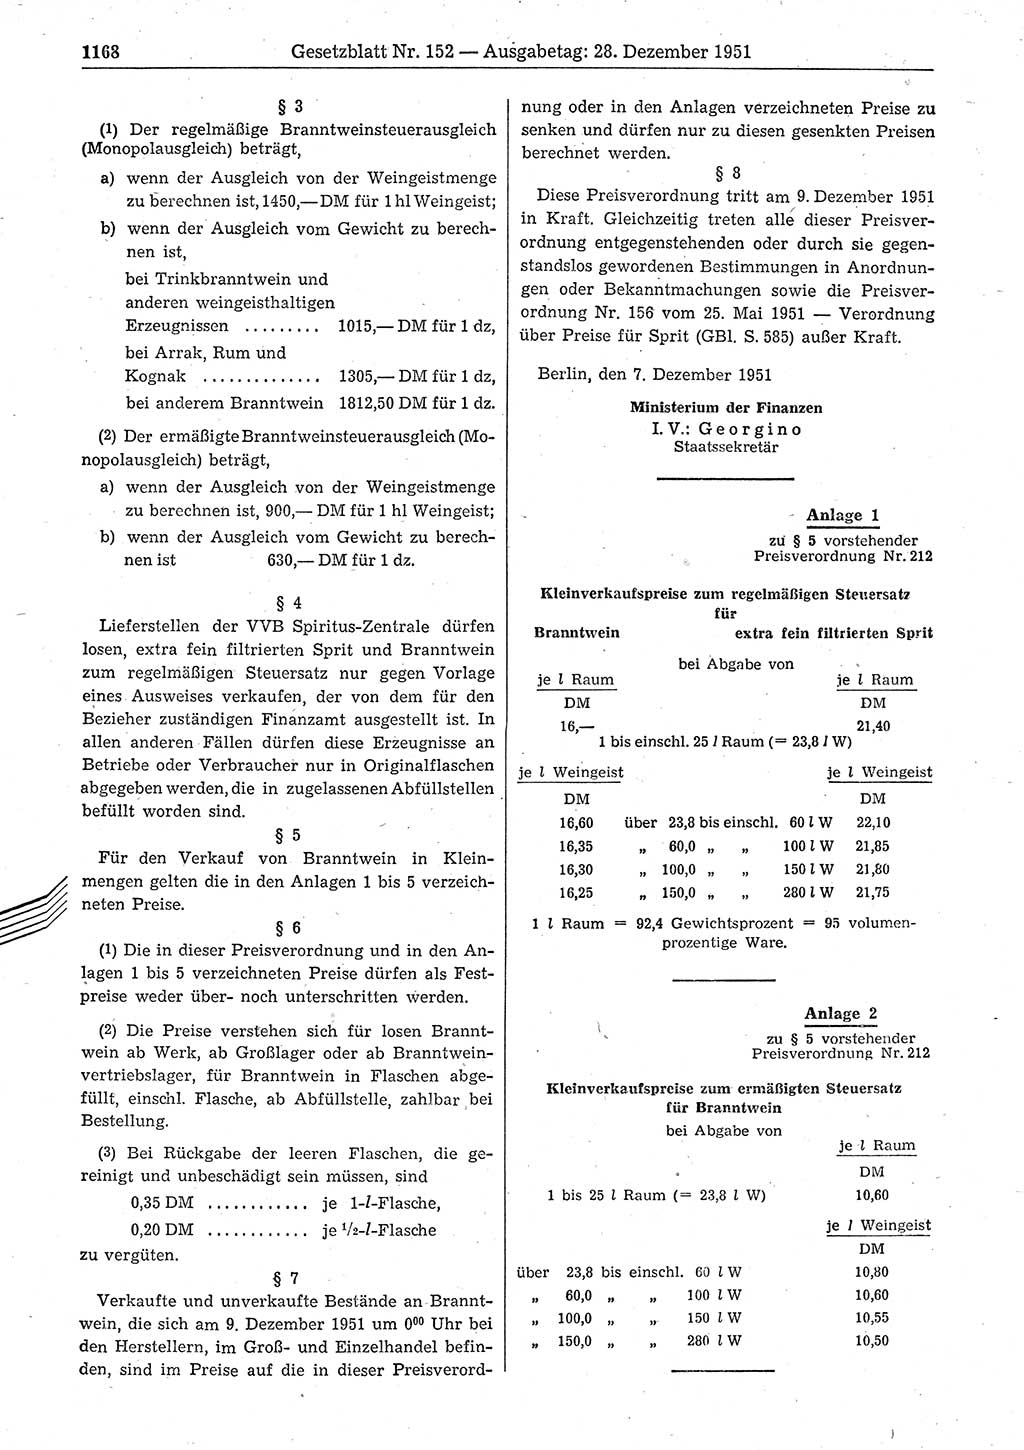 Gesetzblatt (GBl.) der Deutschen Demokratischen Republik (DDR) 1951, Seite 1168 (GBl. DDR 1951, S. 1168)